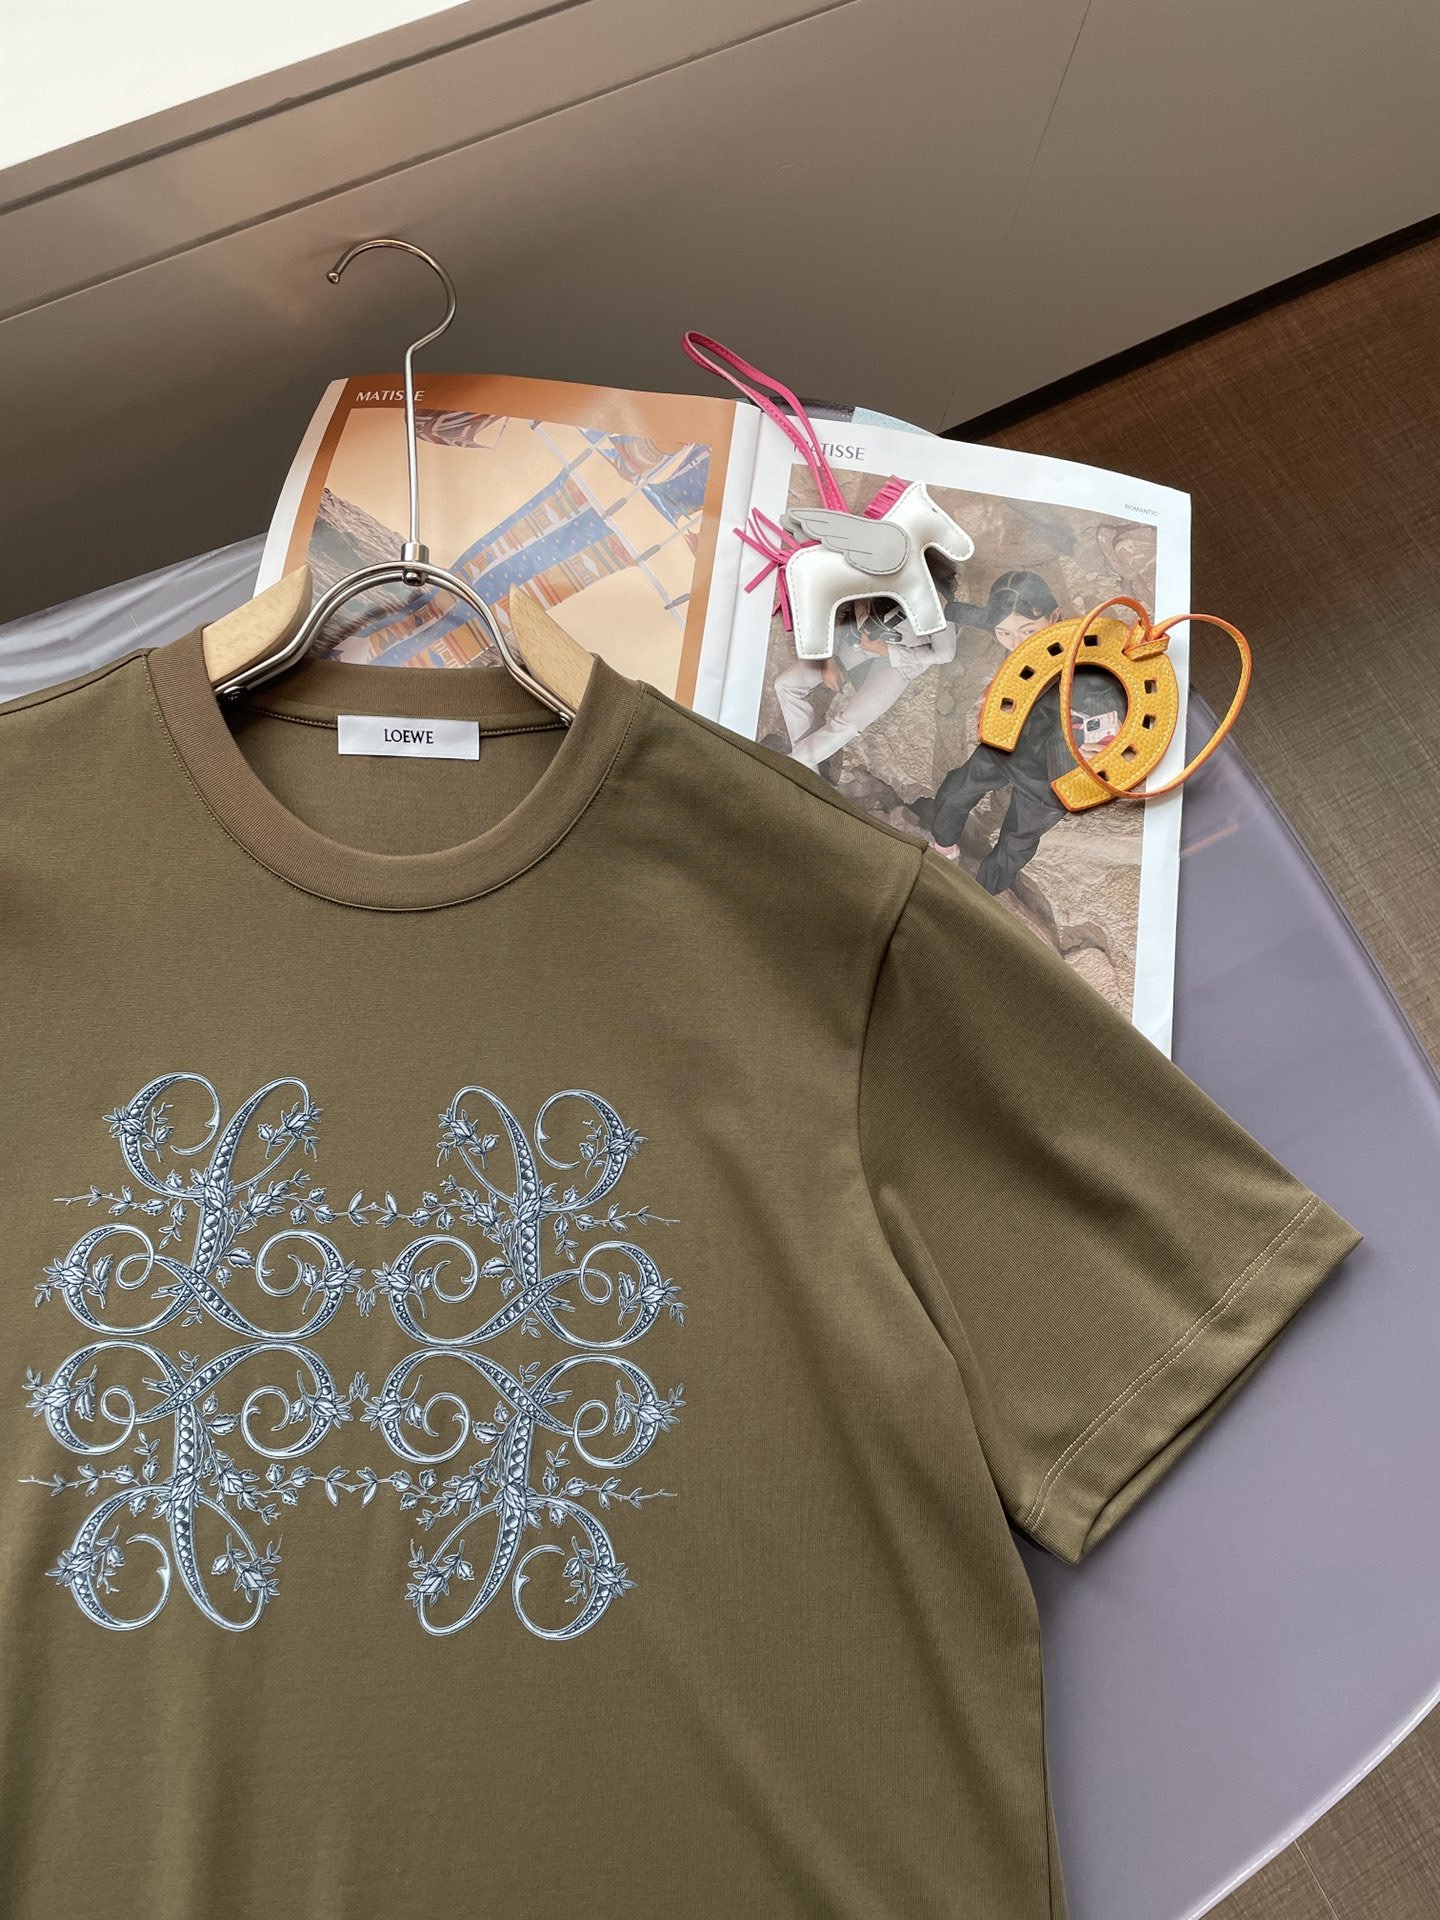 Loewe24SS春夏新款时尚休闲棉质圆领男士高端字母图案短袖T恤衫非常适合日常穿着的百搭单品！客供进口